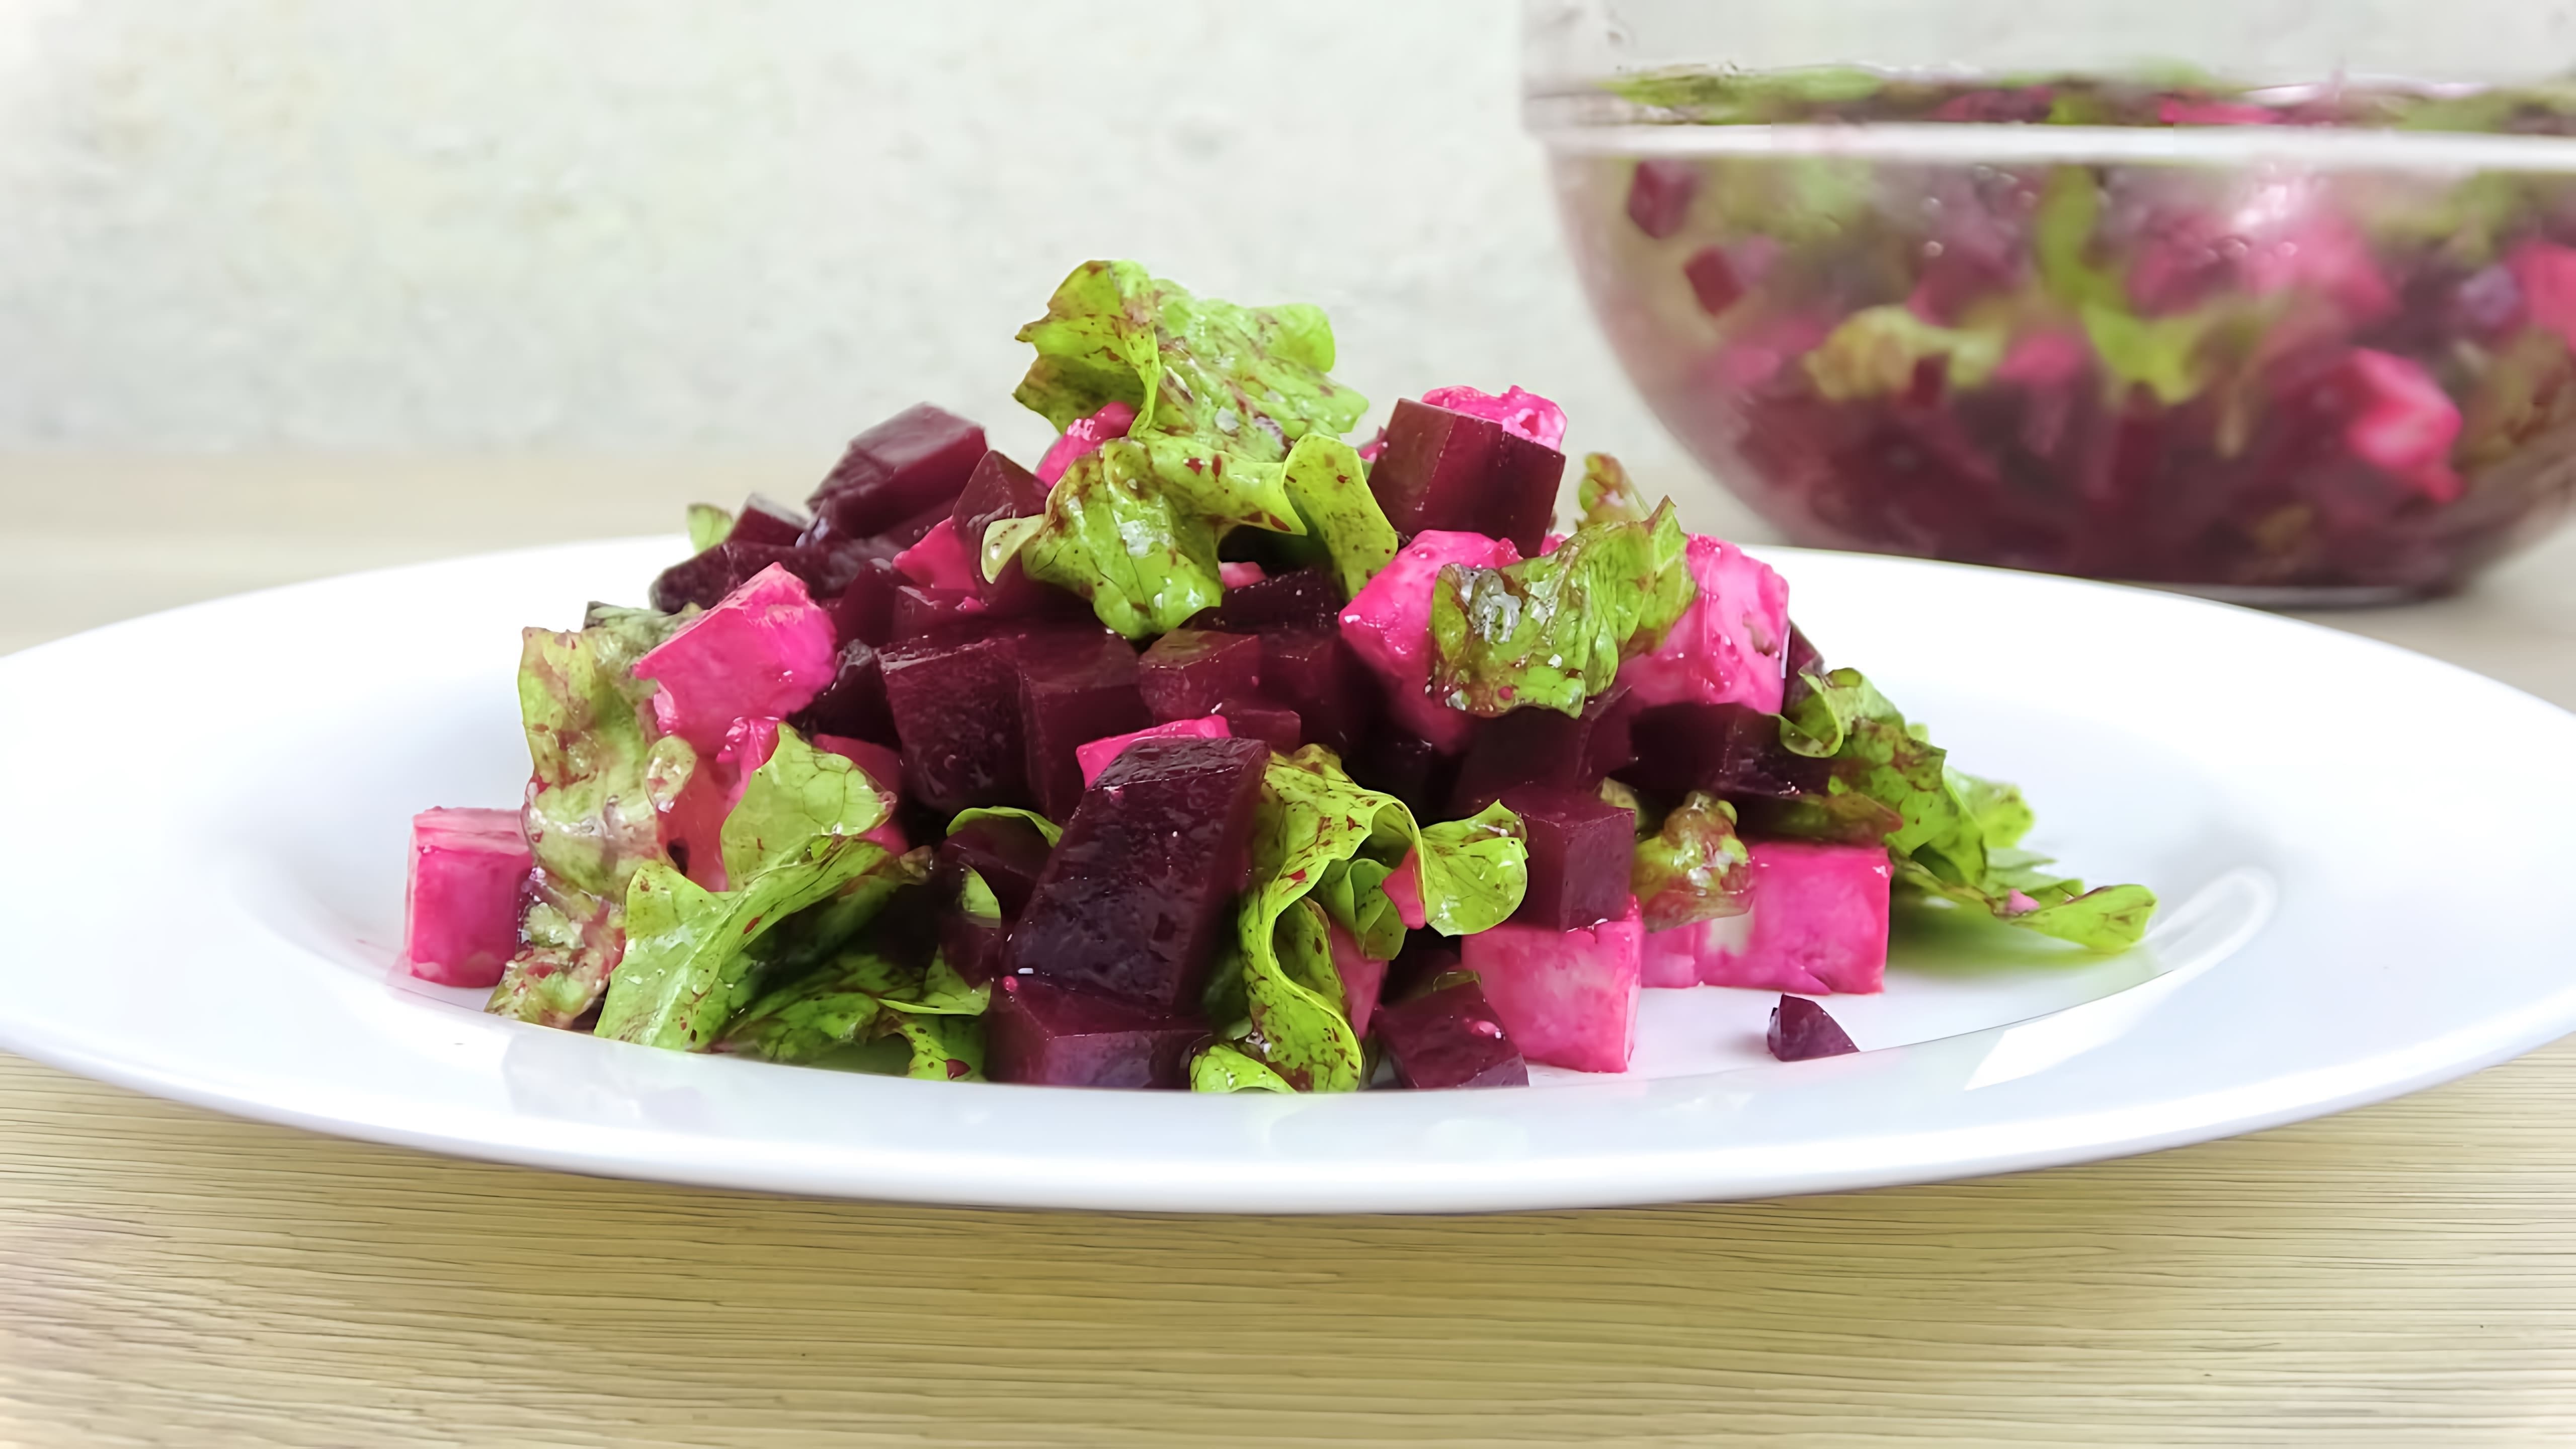 В этом видео демонстрируется новый рецепт салата со свеклой и брынзой